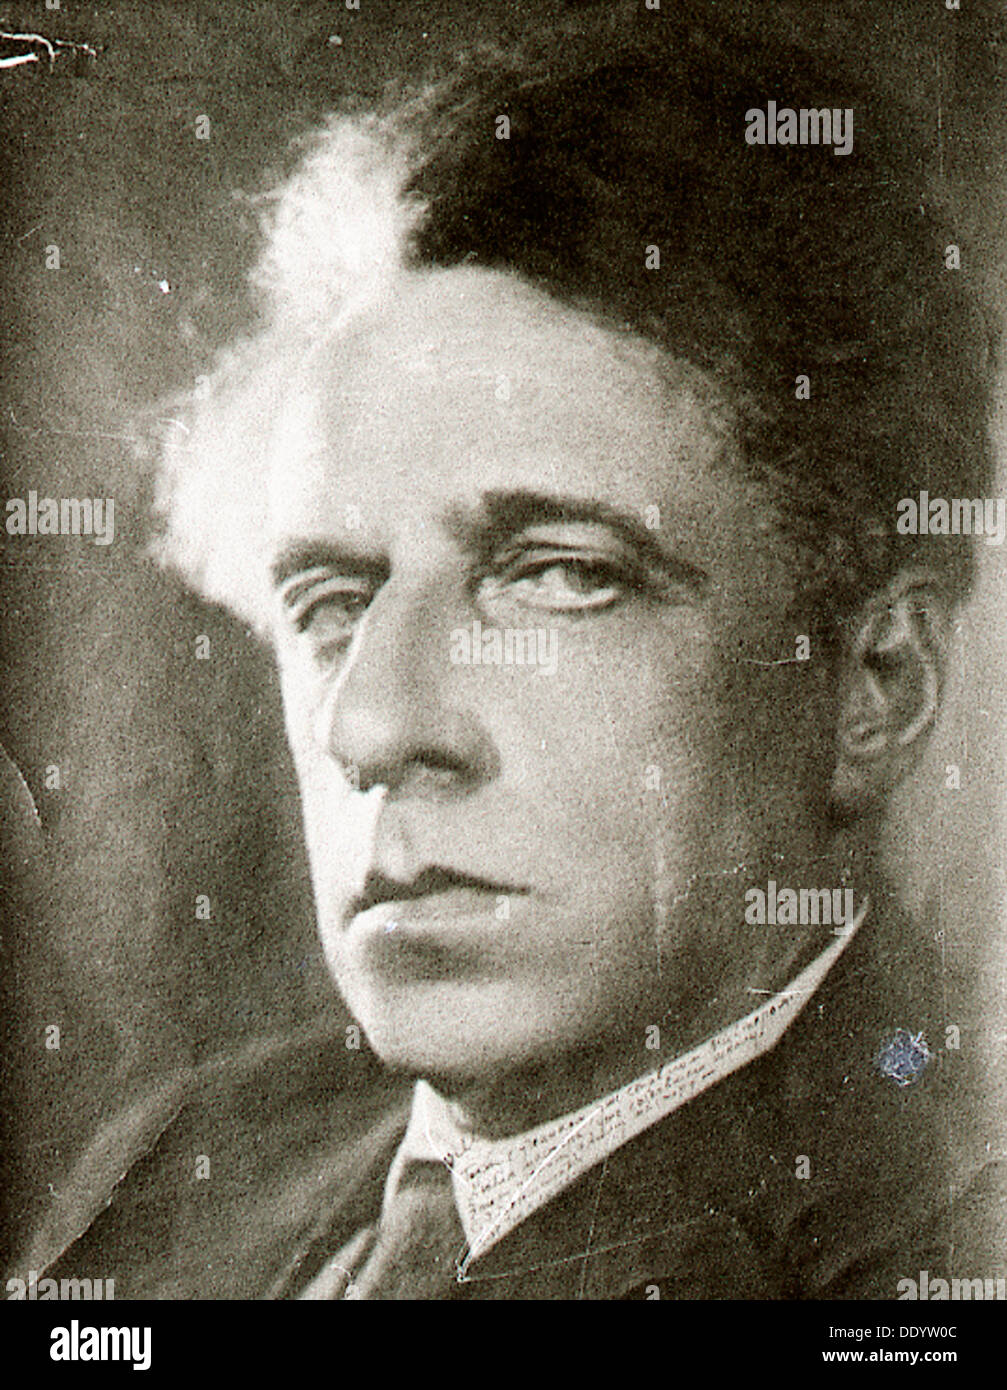 Vsevolod Meyerhold, russischer Schauspieler, Theaterregisseur und Produzent, der 1930er Jahre. Künstler: Anon Stockfoto